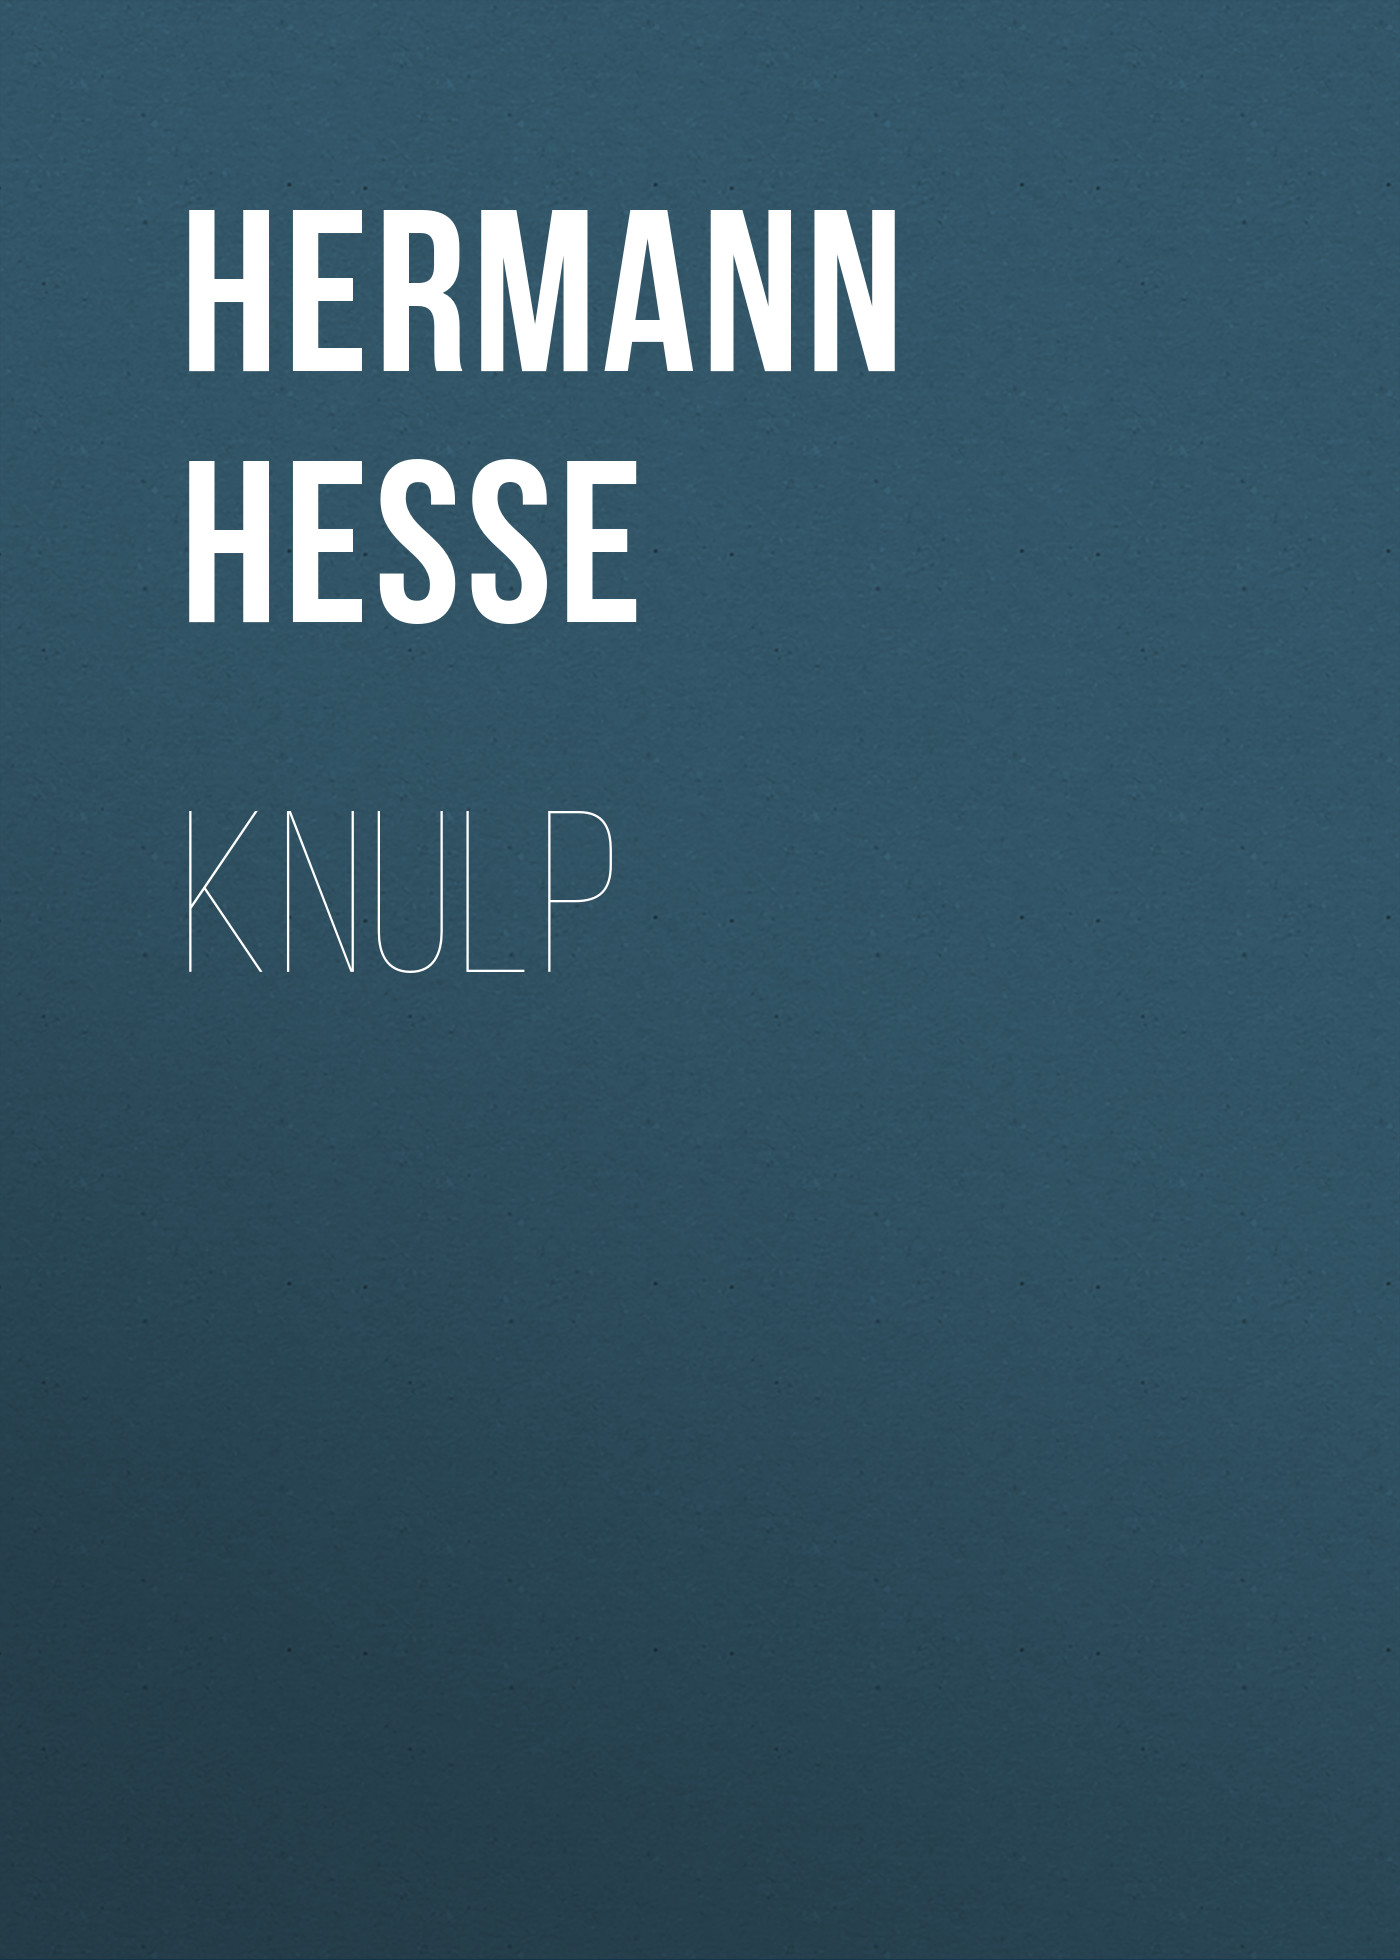 Книга Knulp из серии , созданная Hermann Hesse, может относится к жанру Зарубежная классика. Стоимость электронной книги Knulp с идентификатором 48632044 составляет 0 руб.